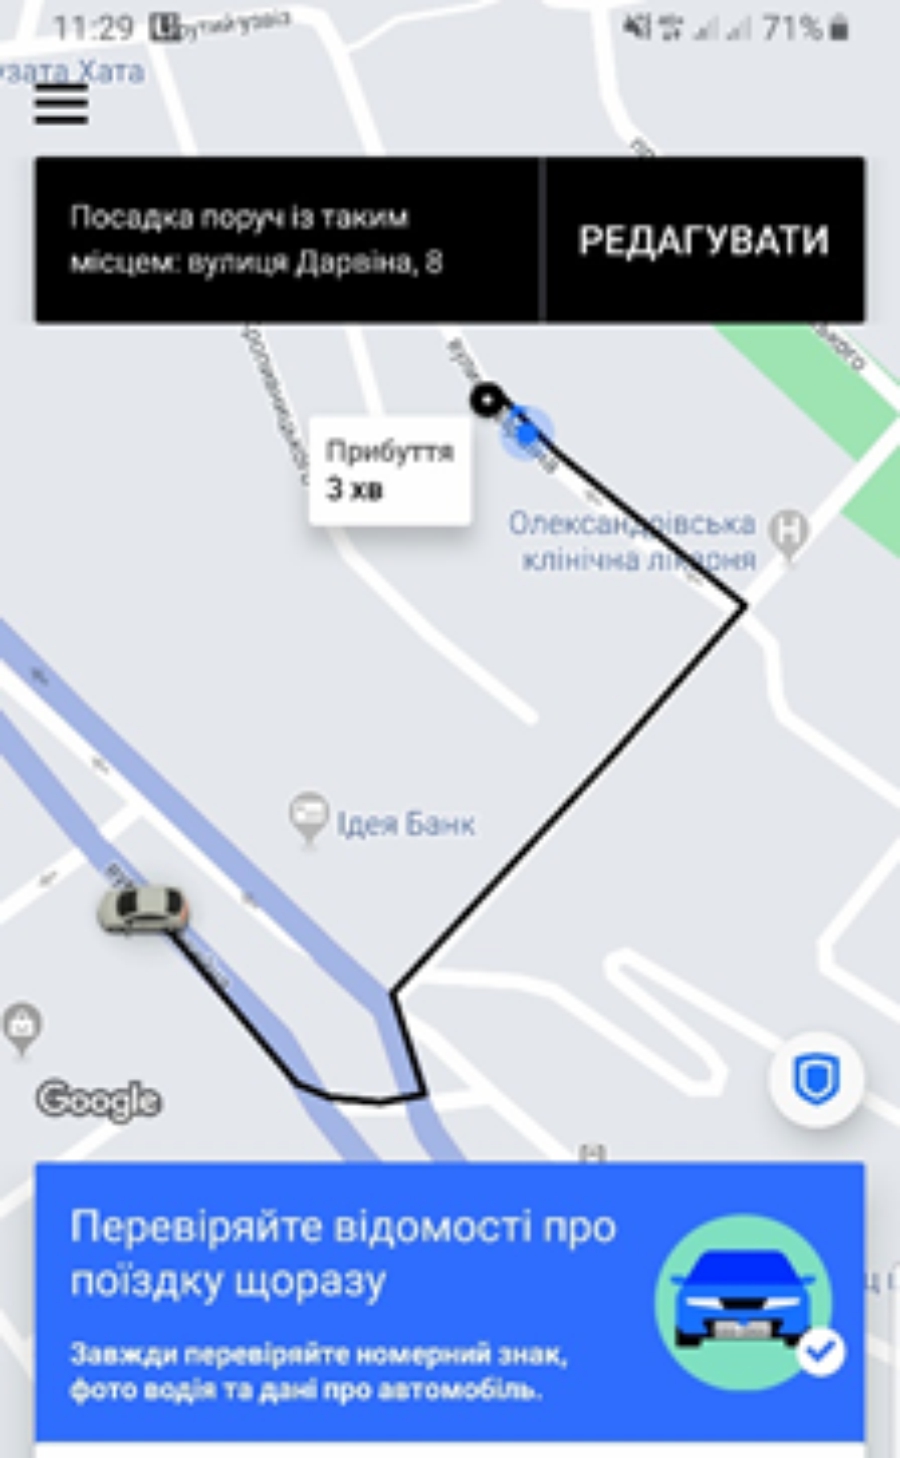 Пассажиры Uber смогут «проверить свою поездку» 1